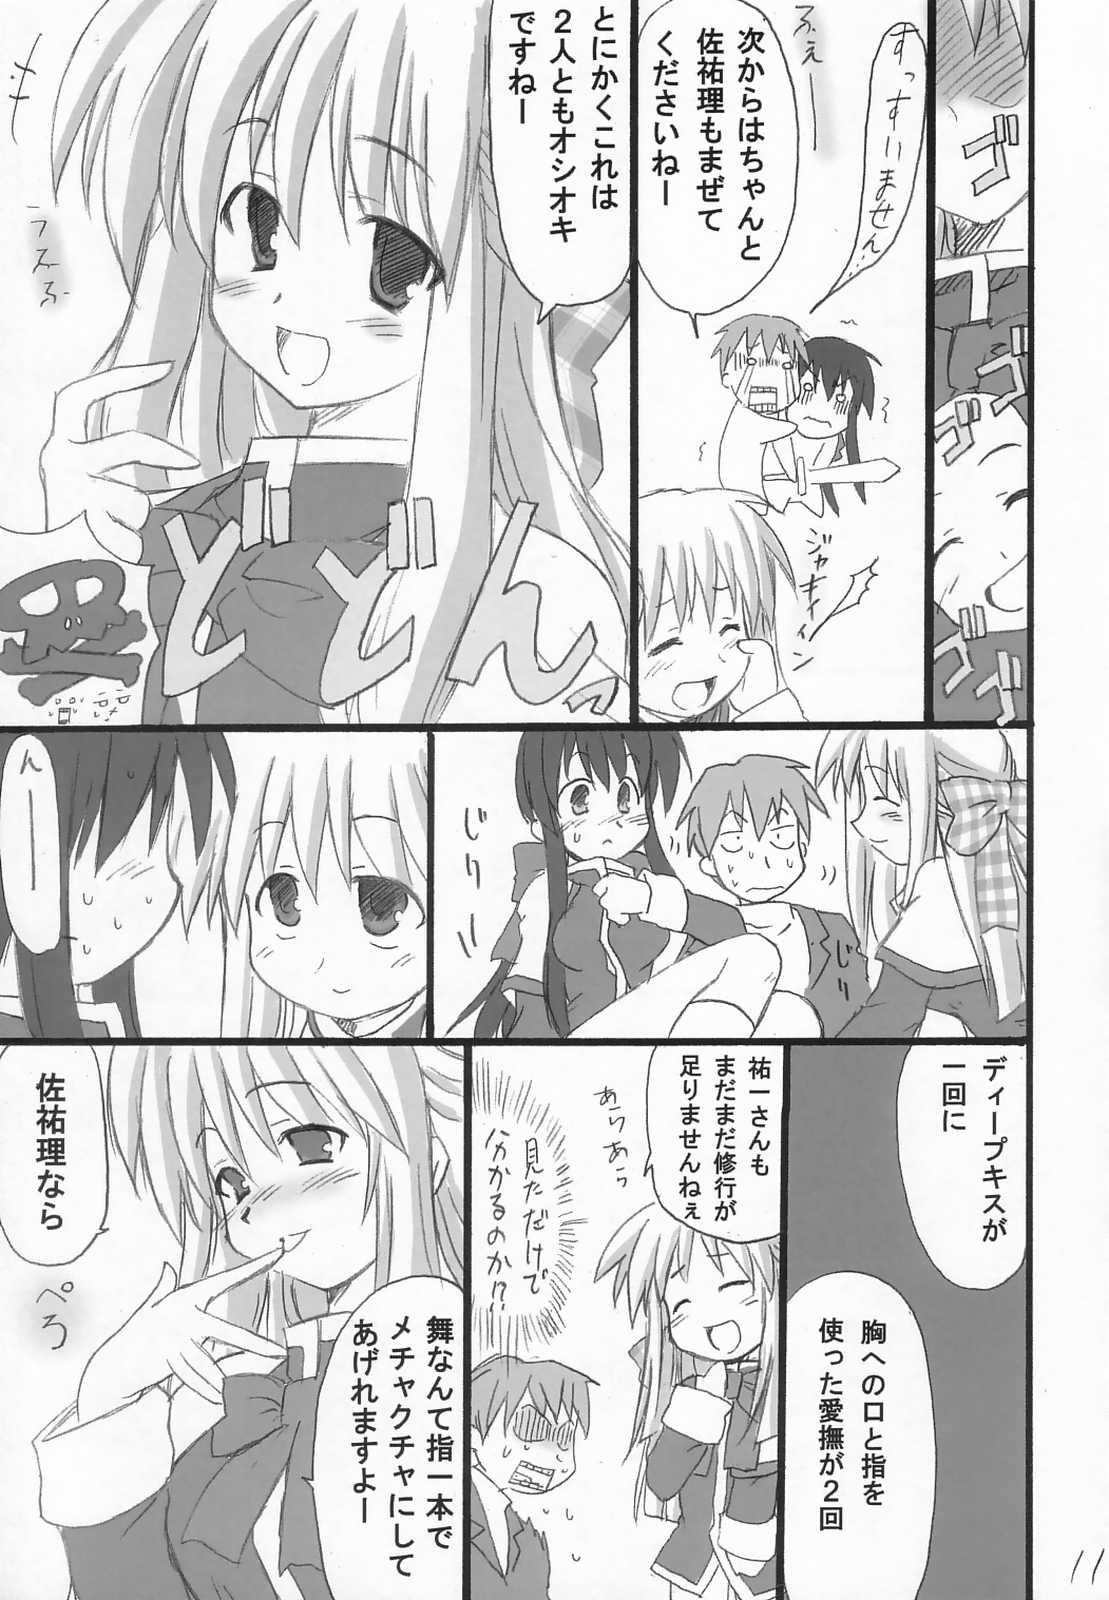 Dorm Usagi Ijime - Kanon Morena - Page 12